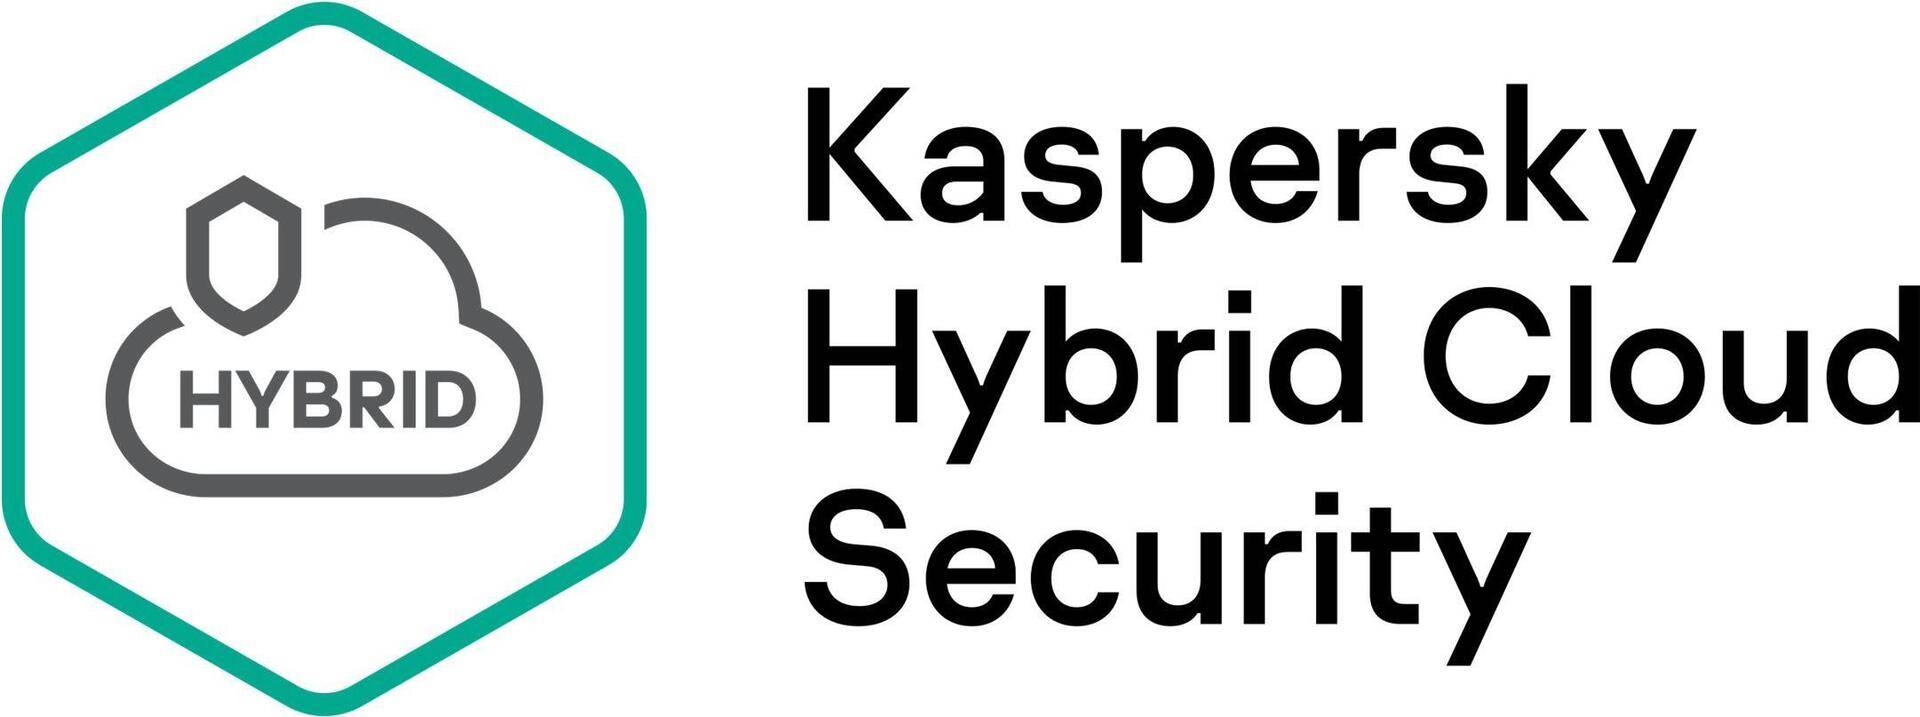 Kaspersky Hybrid Cloud Security Desktop - Erneuerung der Abonnement-Lizenz (2 Jahre) - 1 virtuelle Workstation - Volumen - Stufe T (250-499) - Europa (KL4155XATDR) von Kaspersky Lab